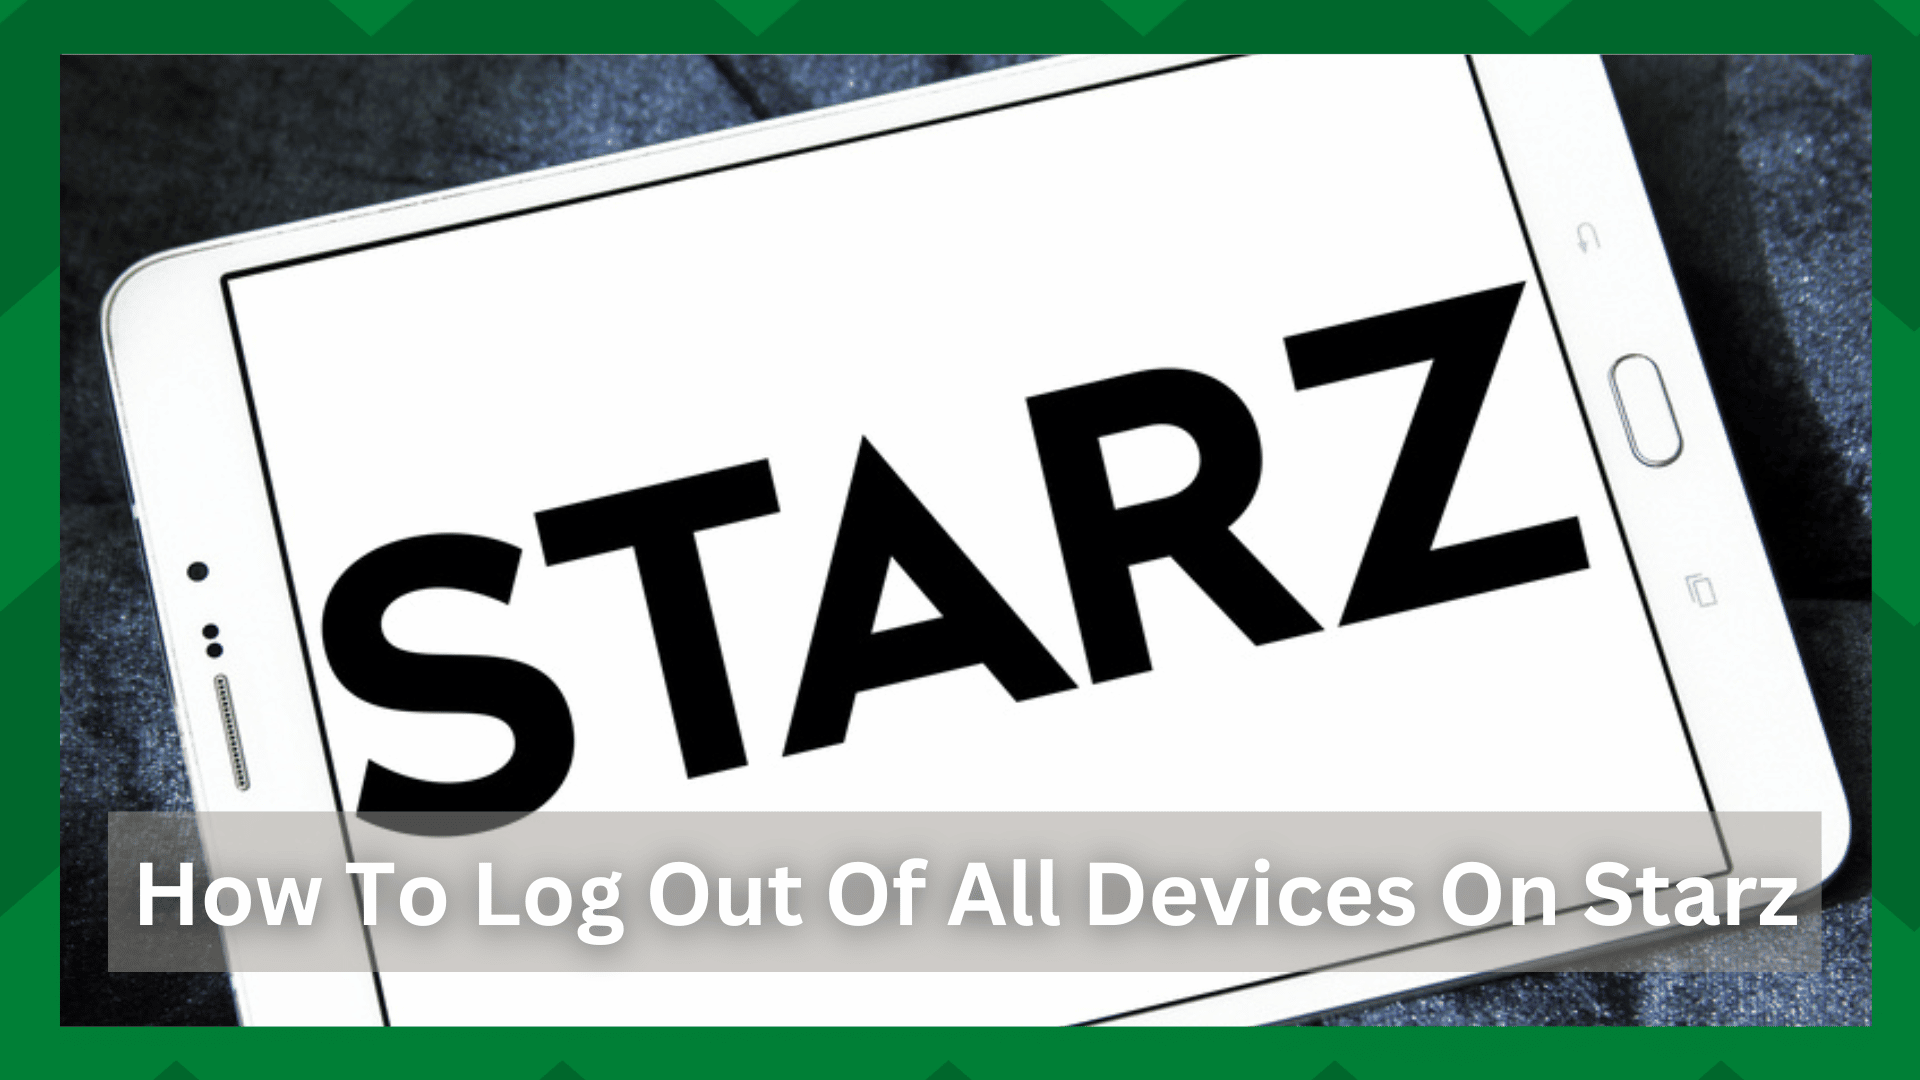 Како се одјавити са свих уређаја у апликацији Старз? (10 корака)